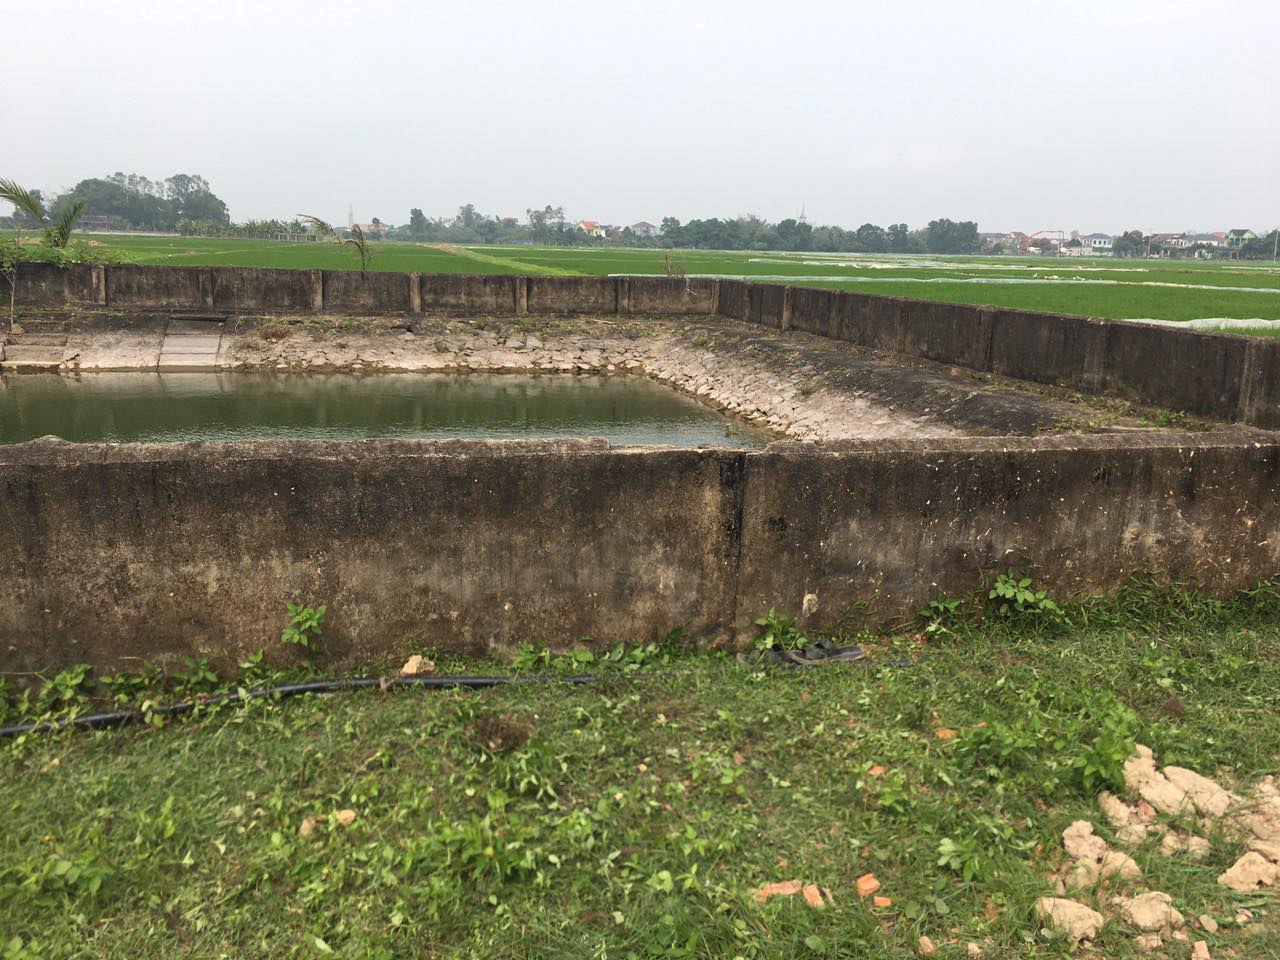 Khu vực giếng làng thôn Ban Long, nơi xảy ra vụ việc - Ảnh: Khánh Trung